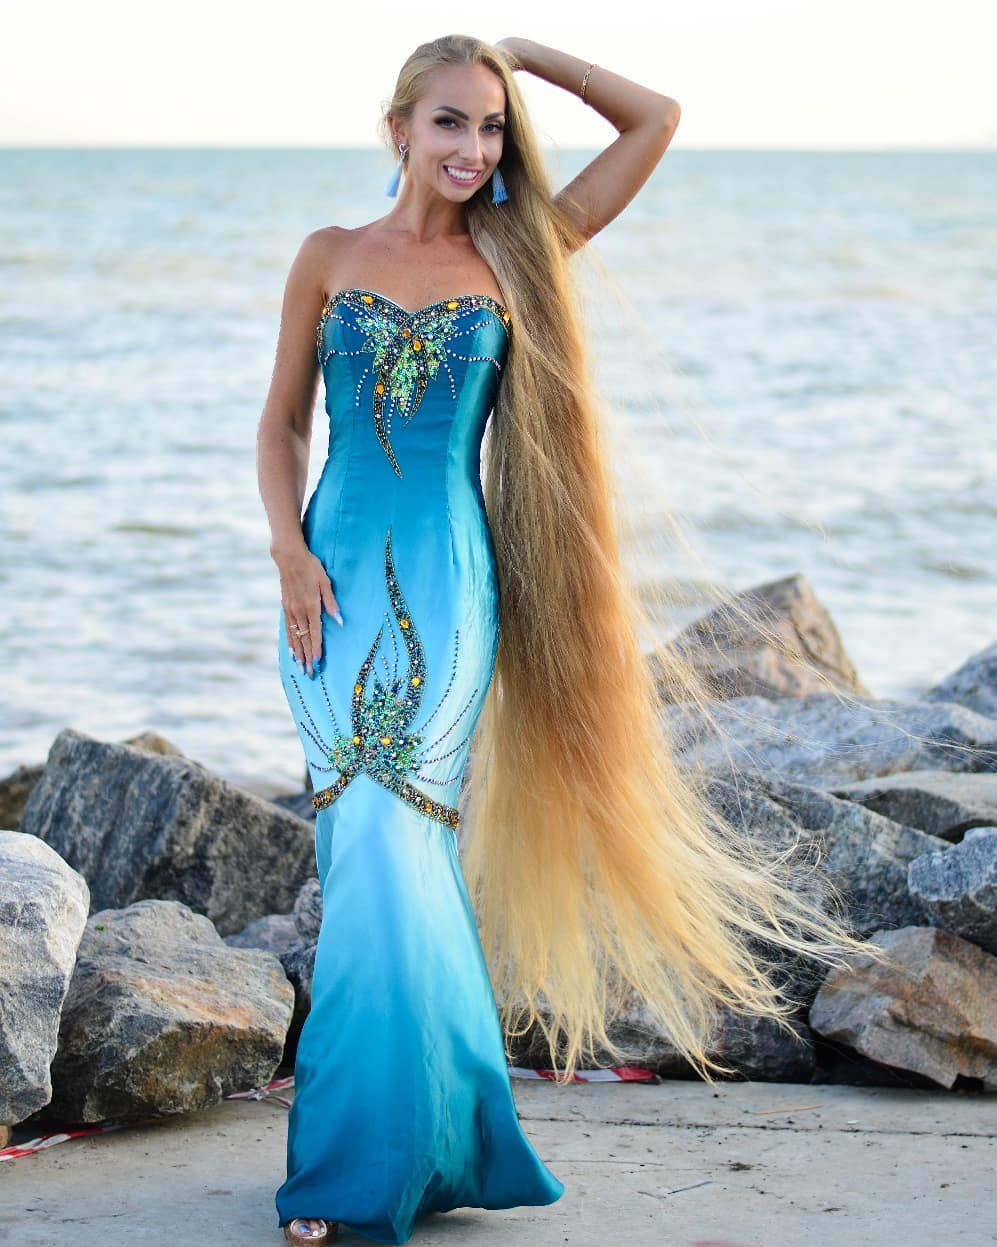 乌克兰美女三个星期不洗头长发超18米却有求婚者称想闻秀发